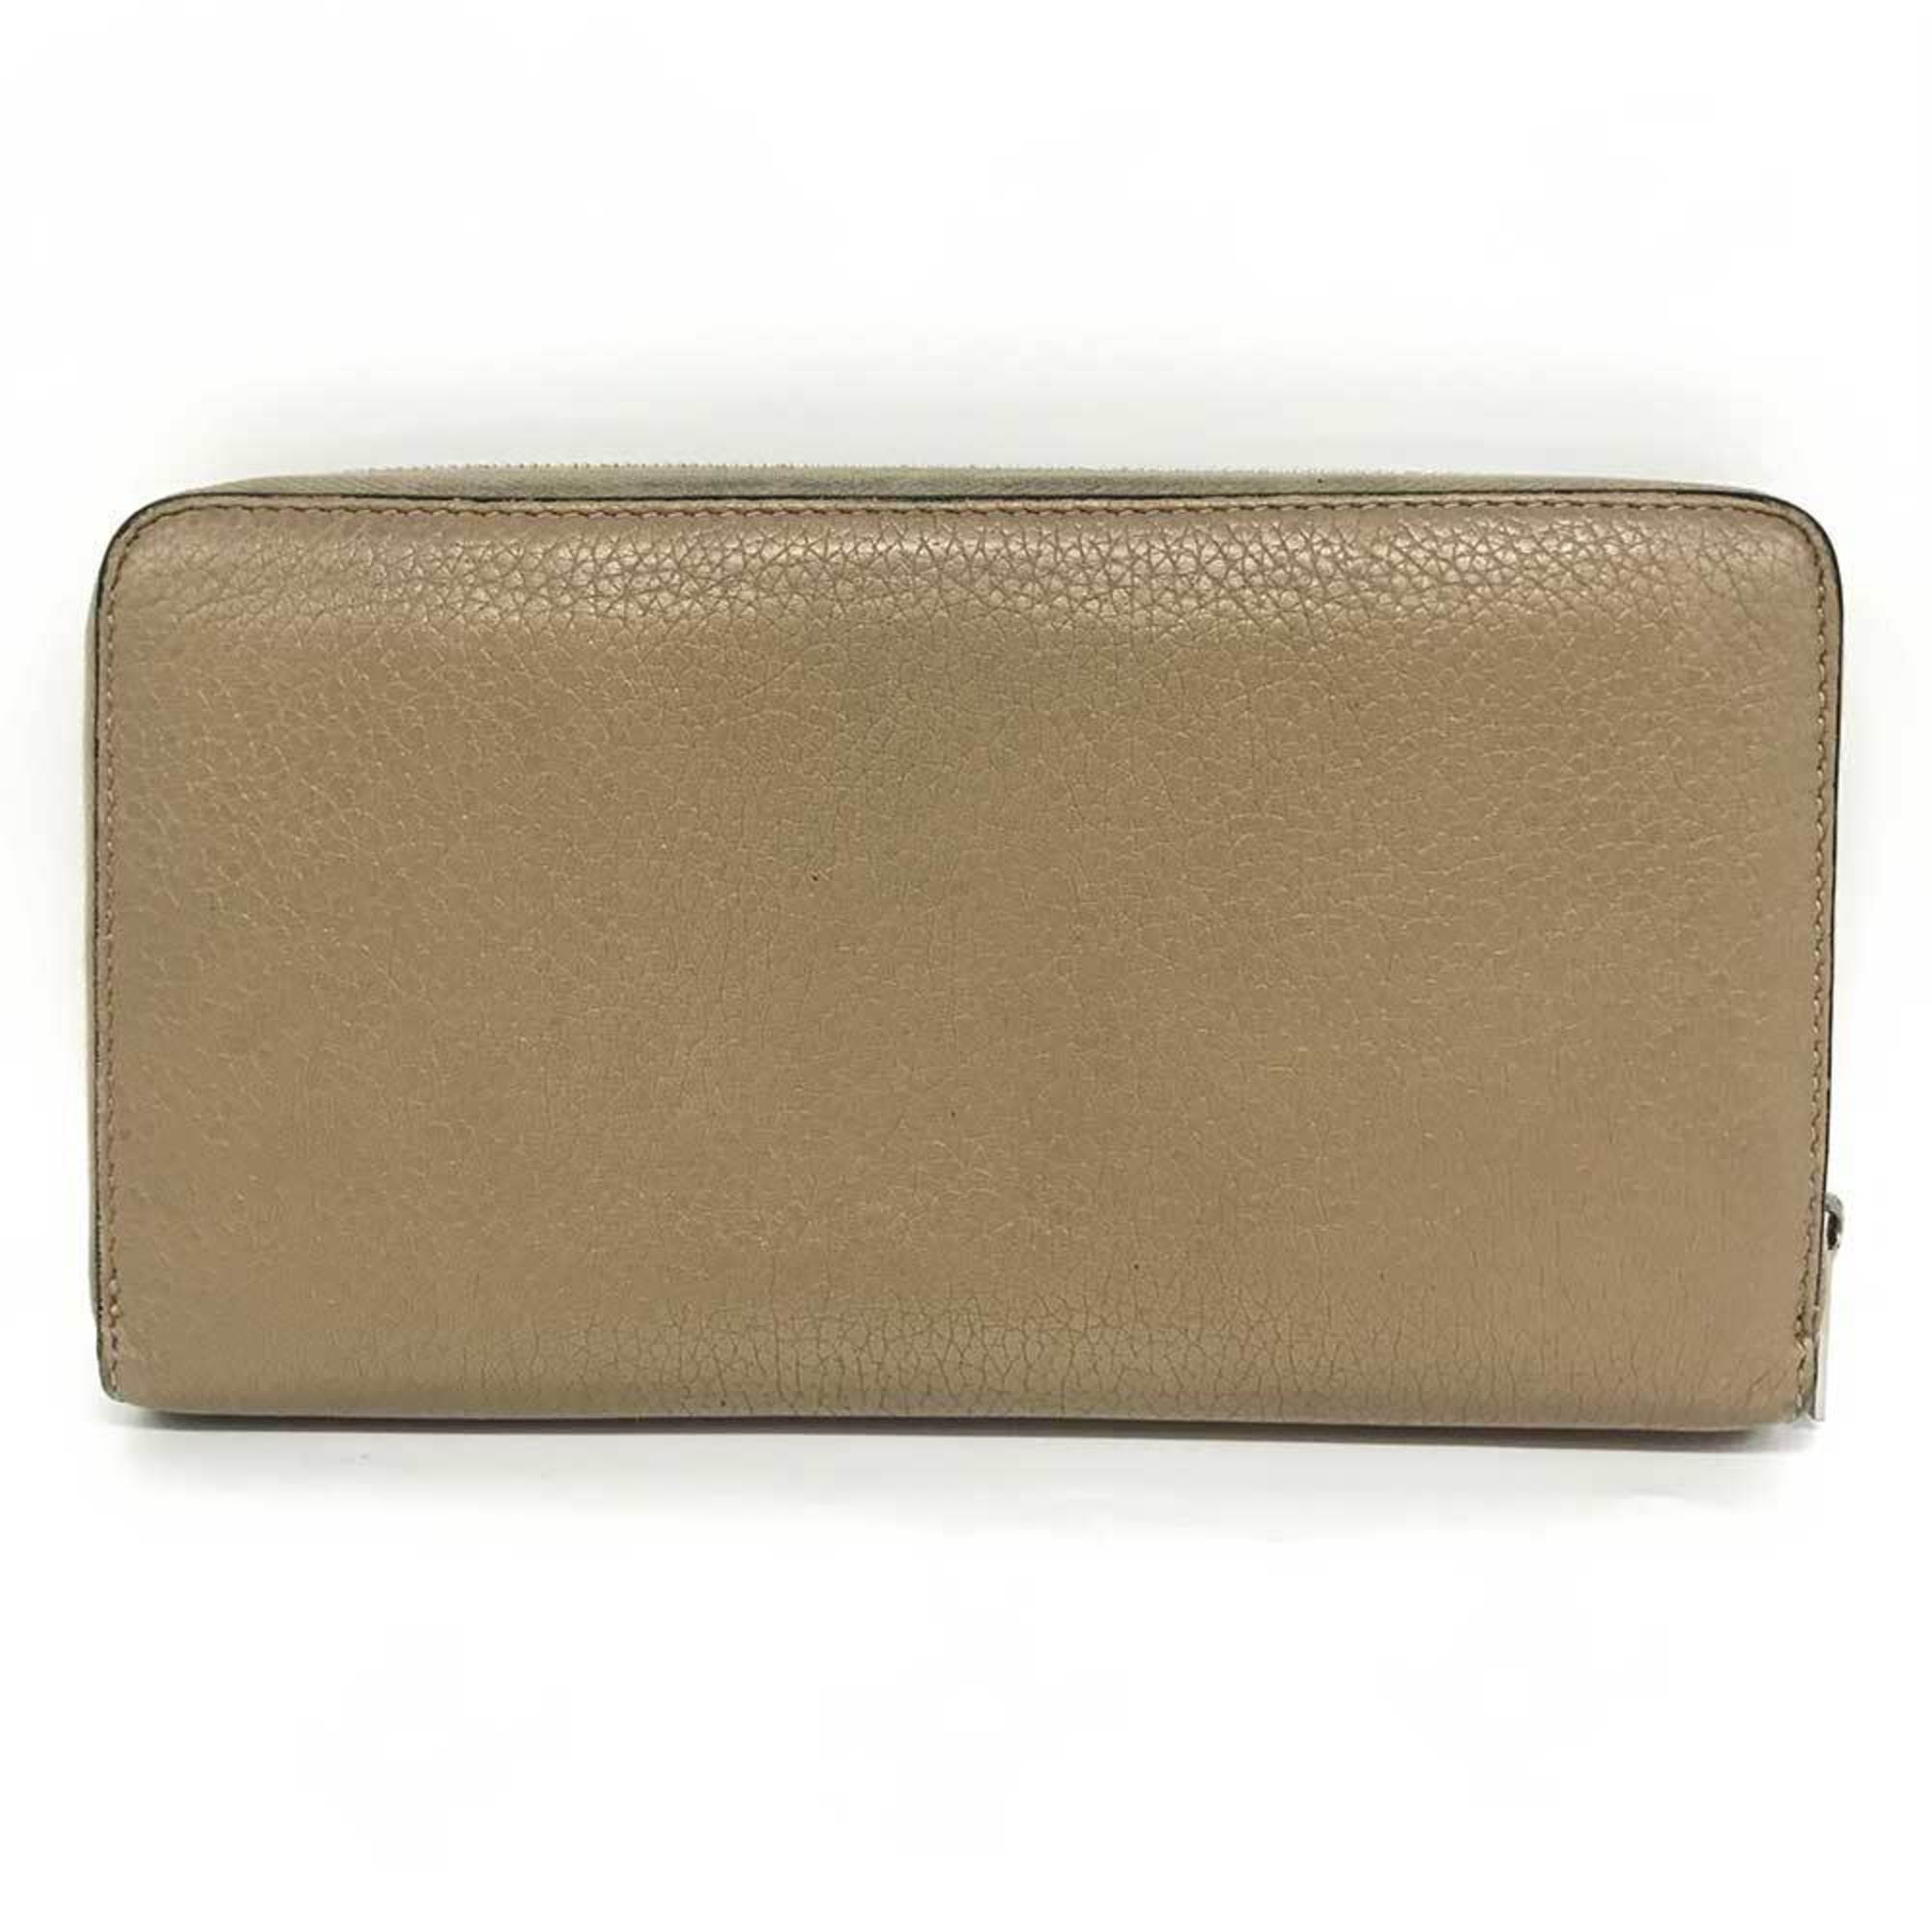 Celine Round Long Wallet Beige Leather U-CE-0177 CELINE